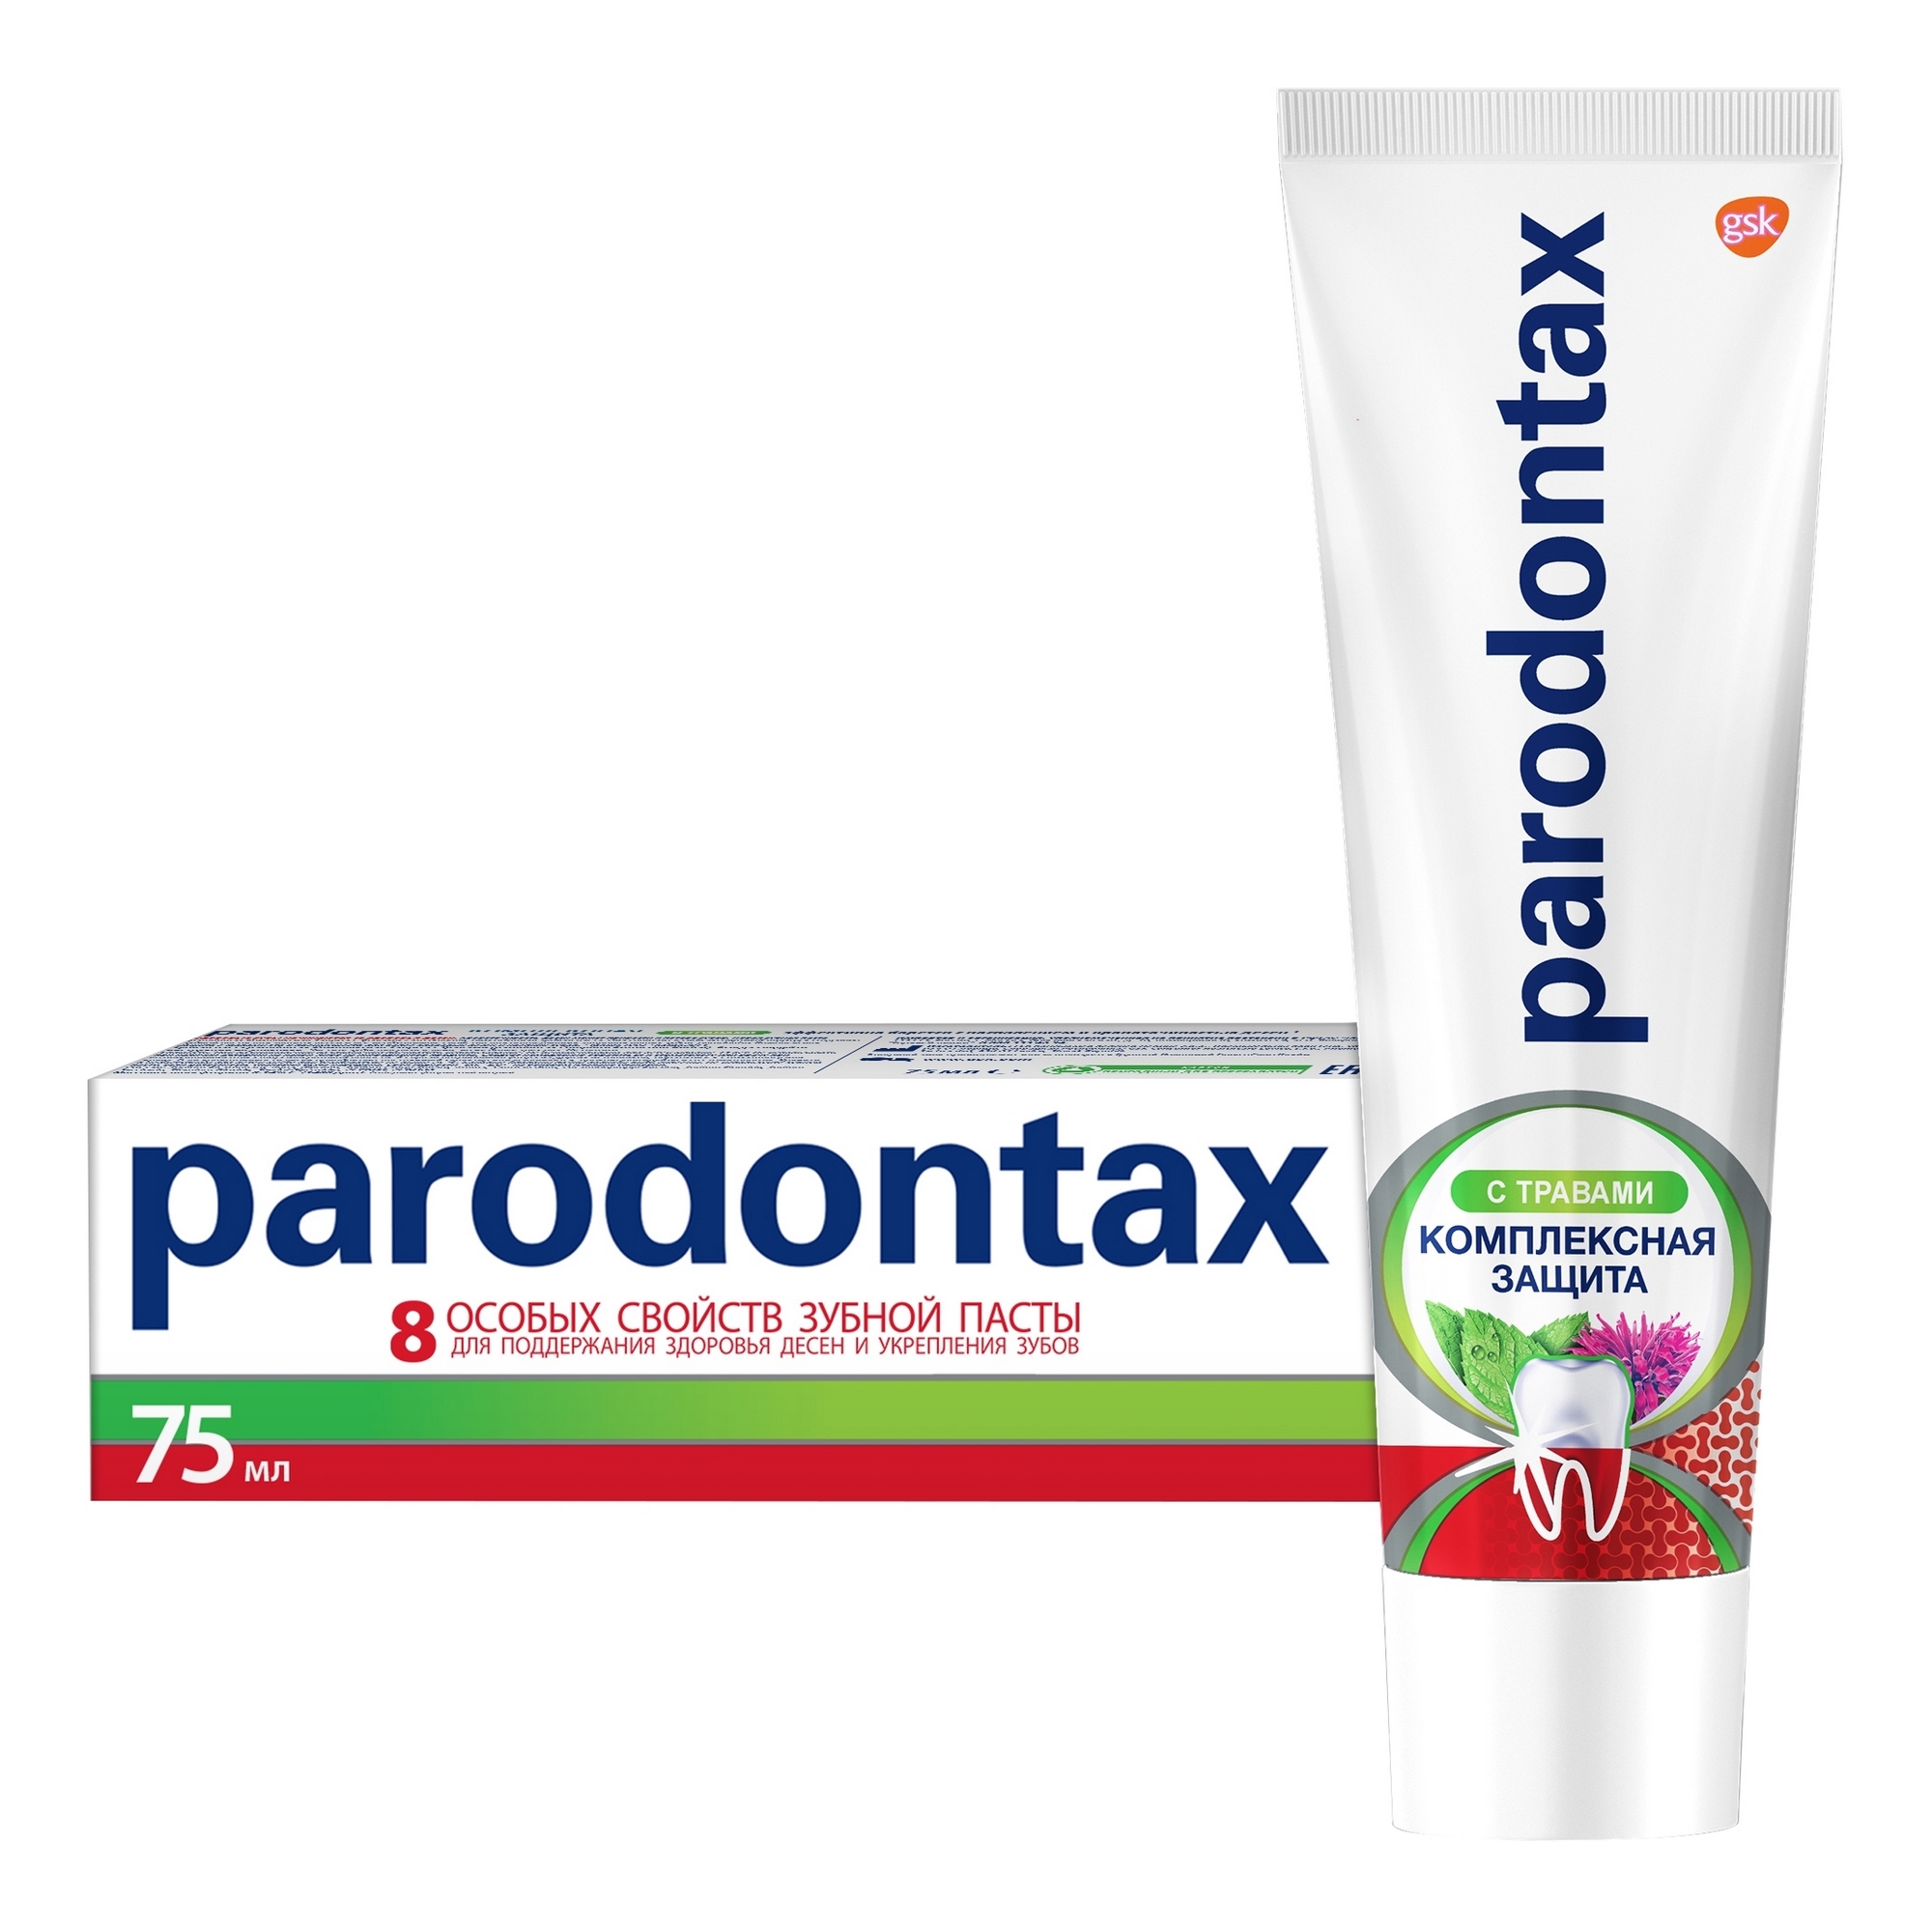 Зубная паста Parodontax Комплексная защита с травами 75 мл зубная паста sensodyne комплексная защита 75 мл